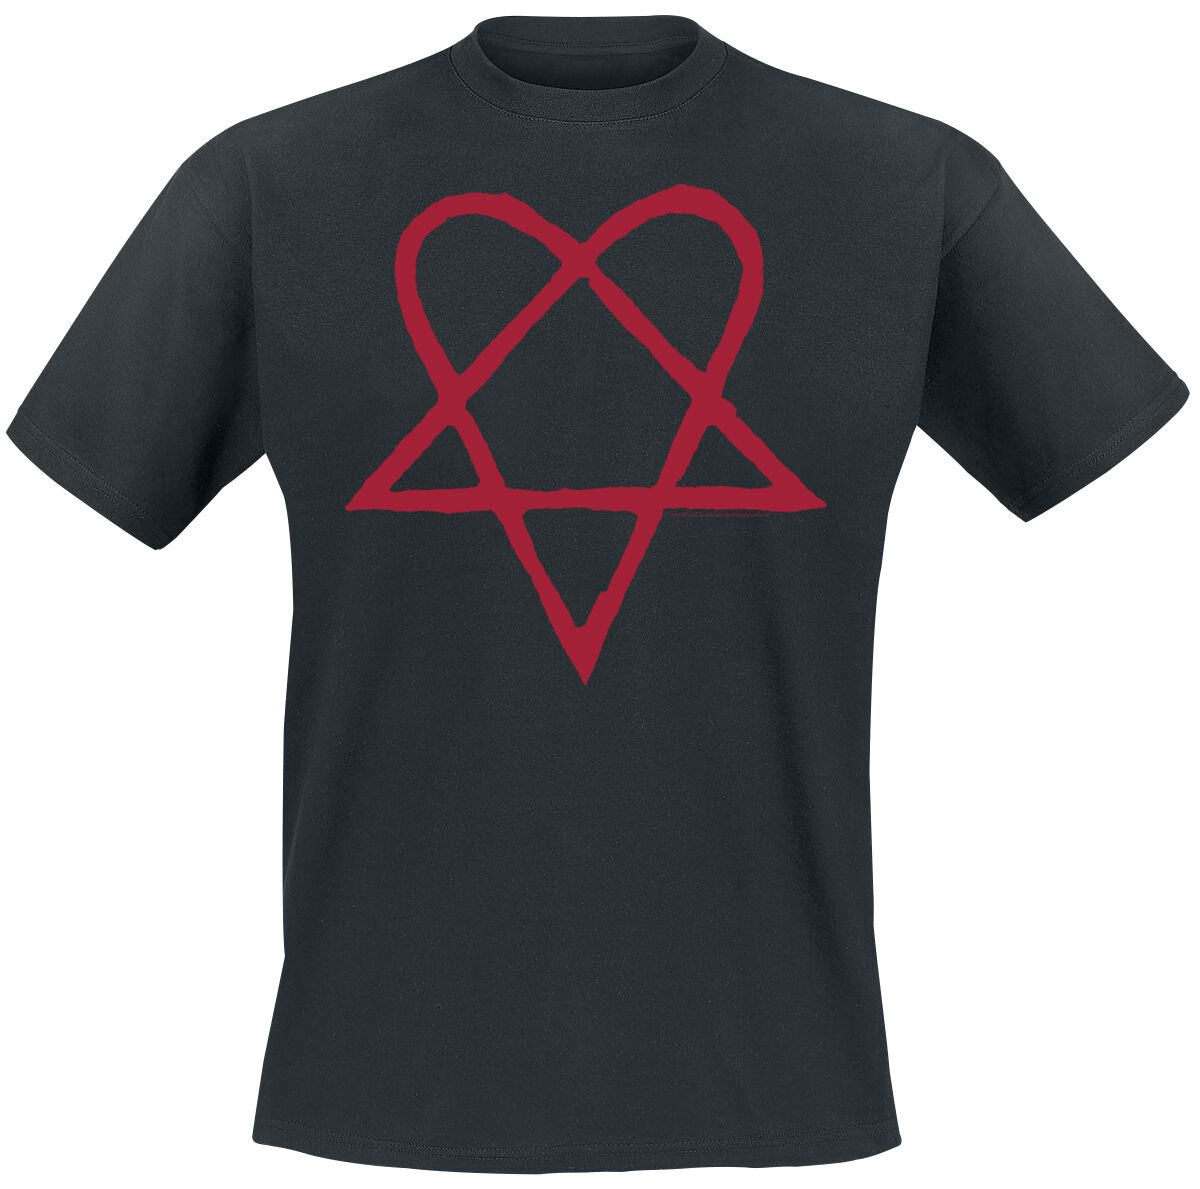 HIM T-Shirt - Dark Red Heartagram - S bis 4XL - für Männer - Größe XL - schwarz  - Lizenziertes Merchandise!